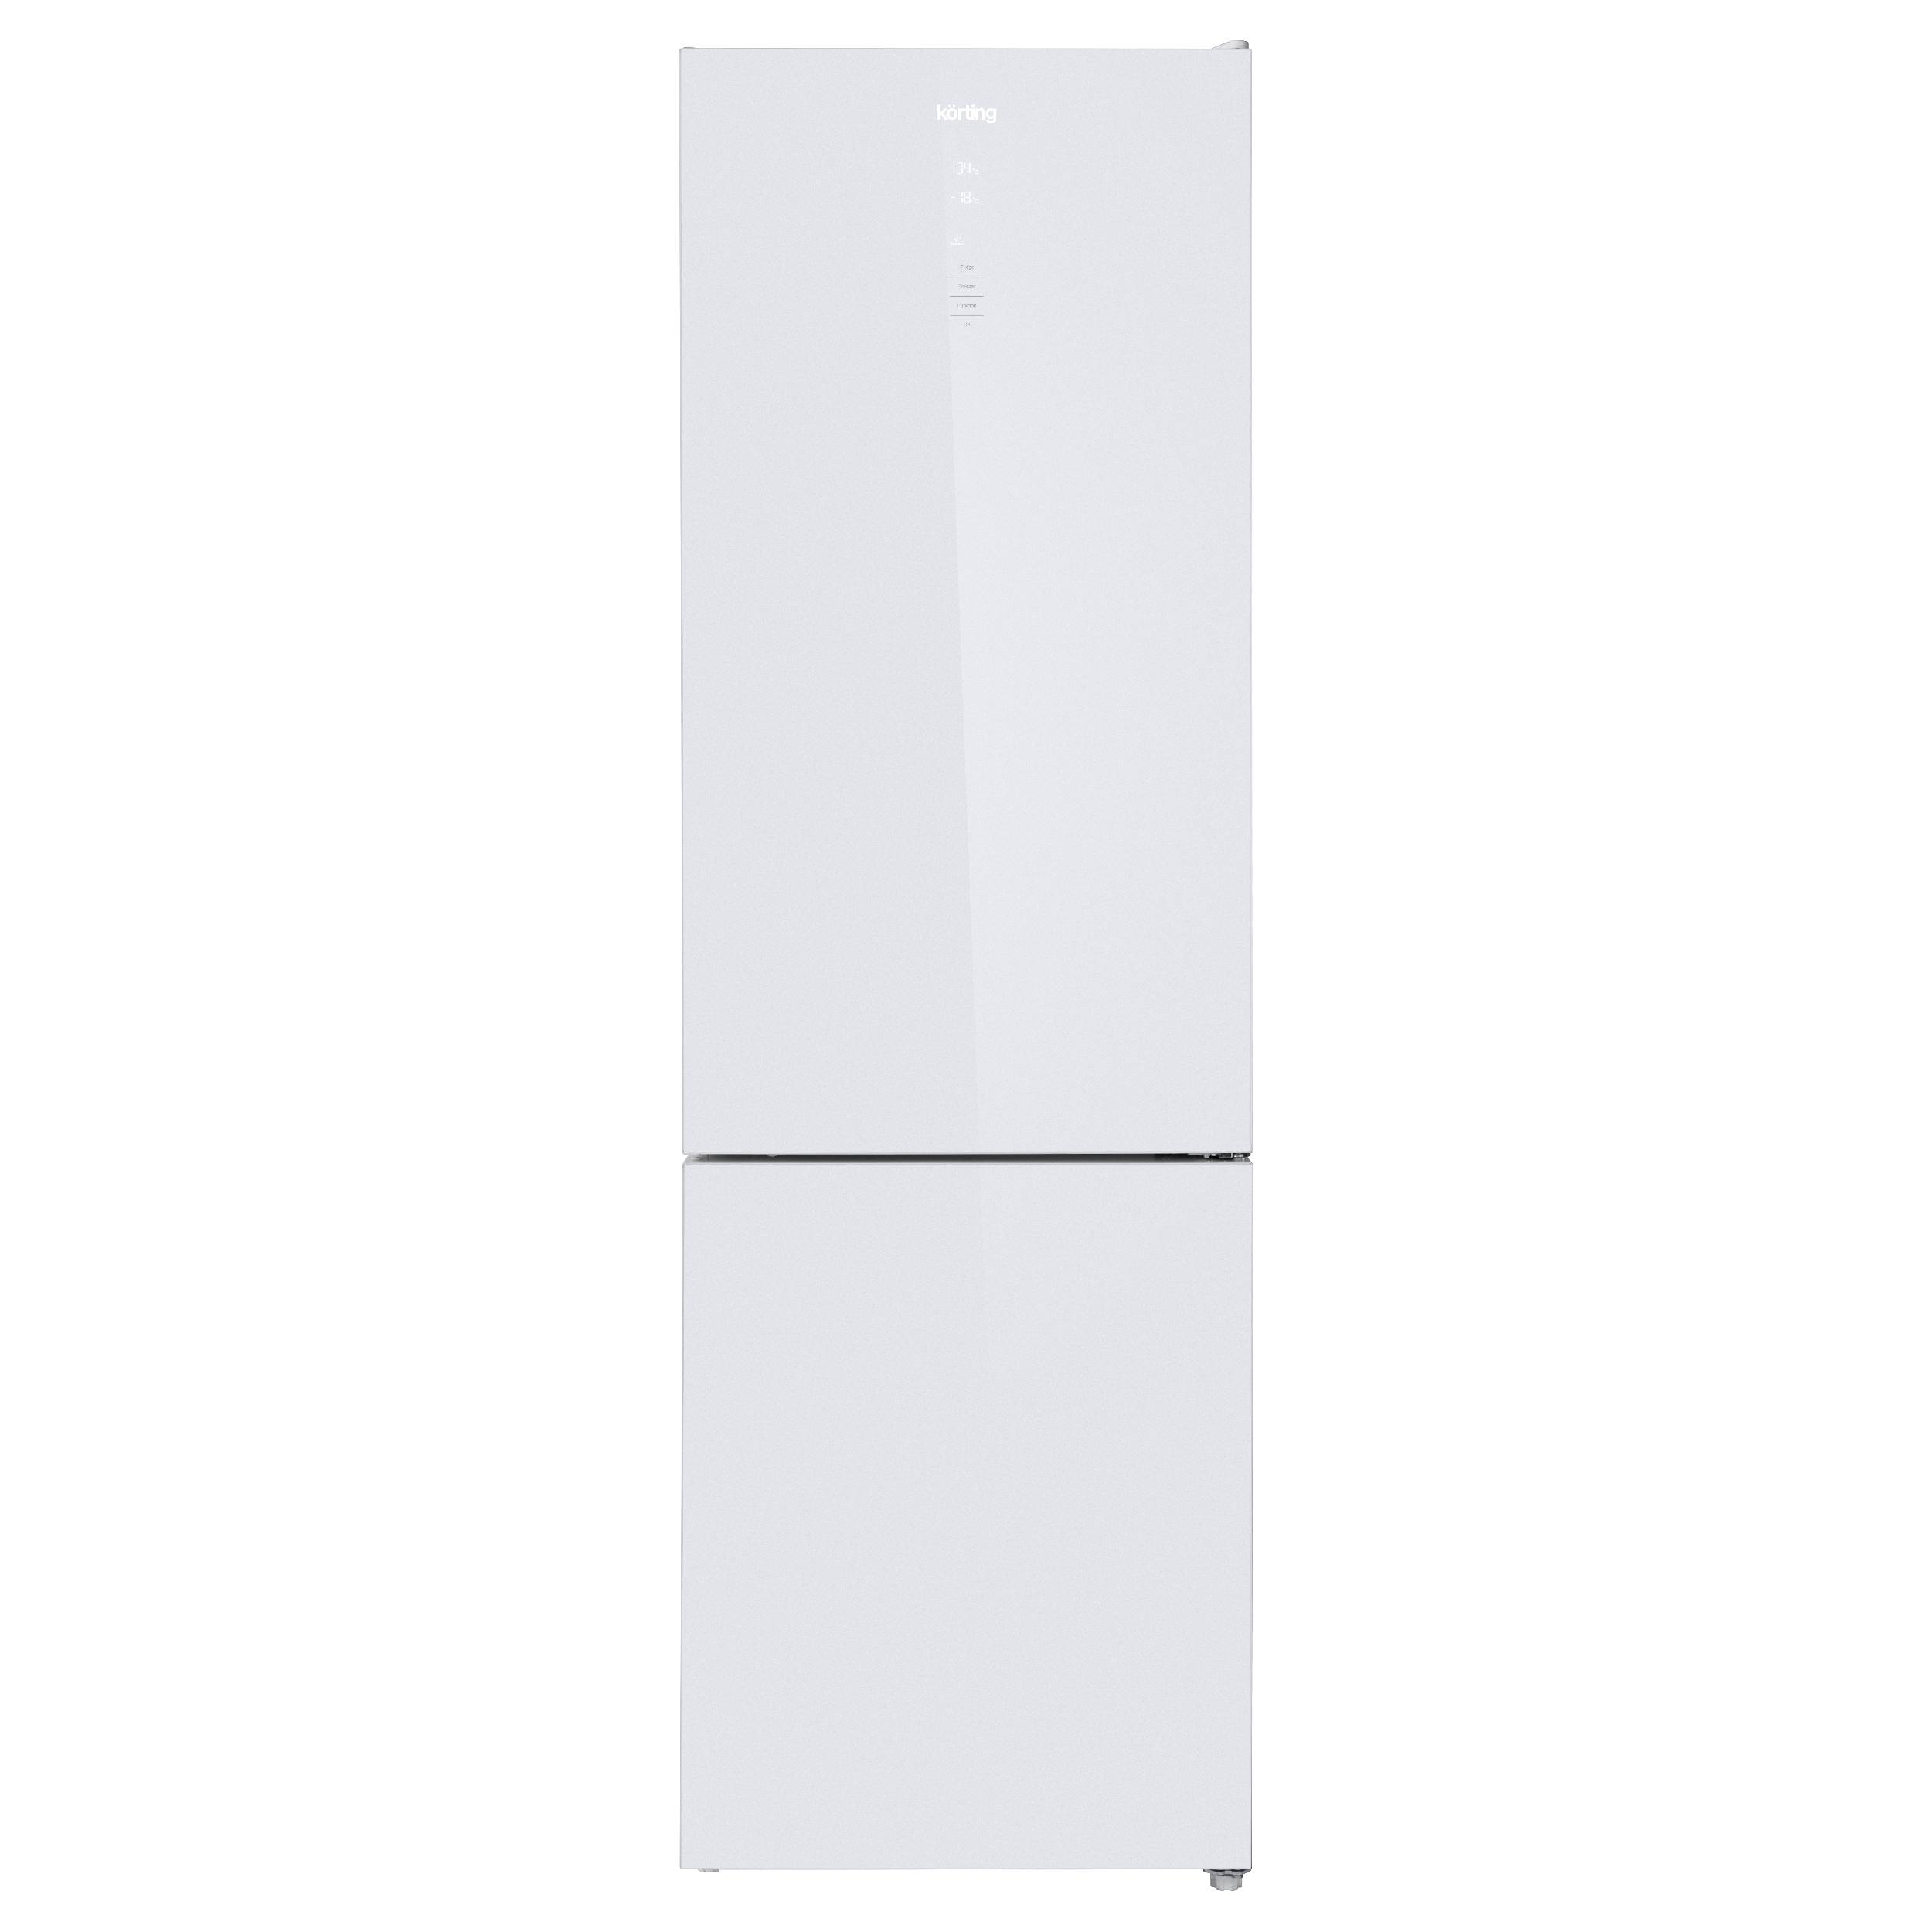 Холодильник Korting KNFC 62370 GW белый, серебристый двухкамерный холодильник korting knfc 71928 gn